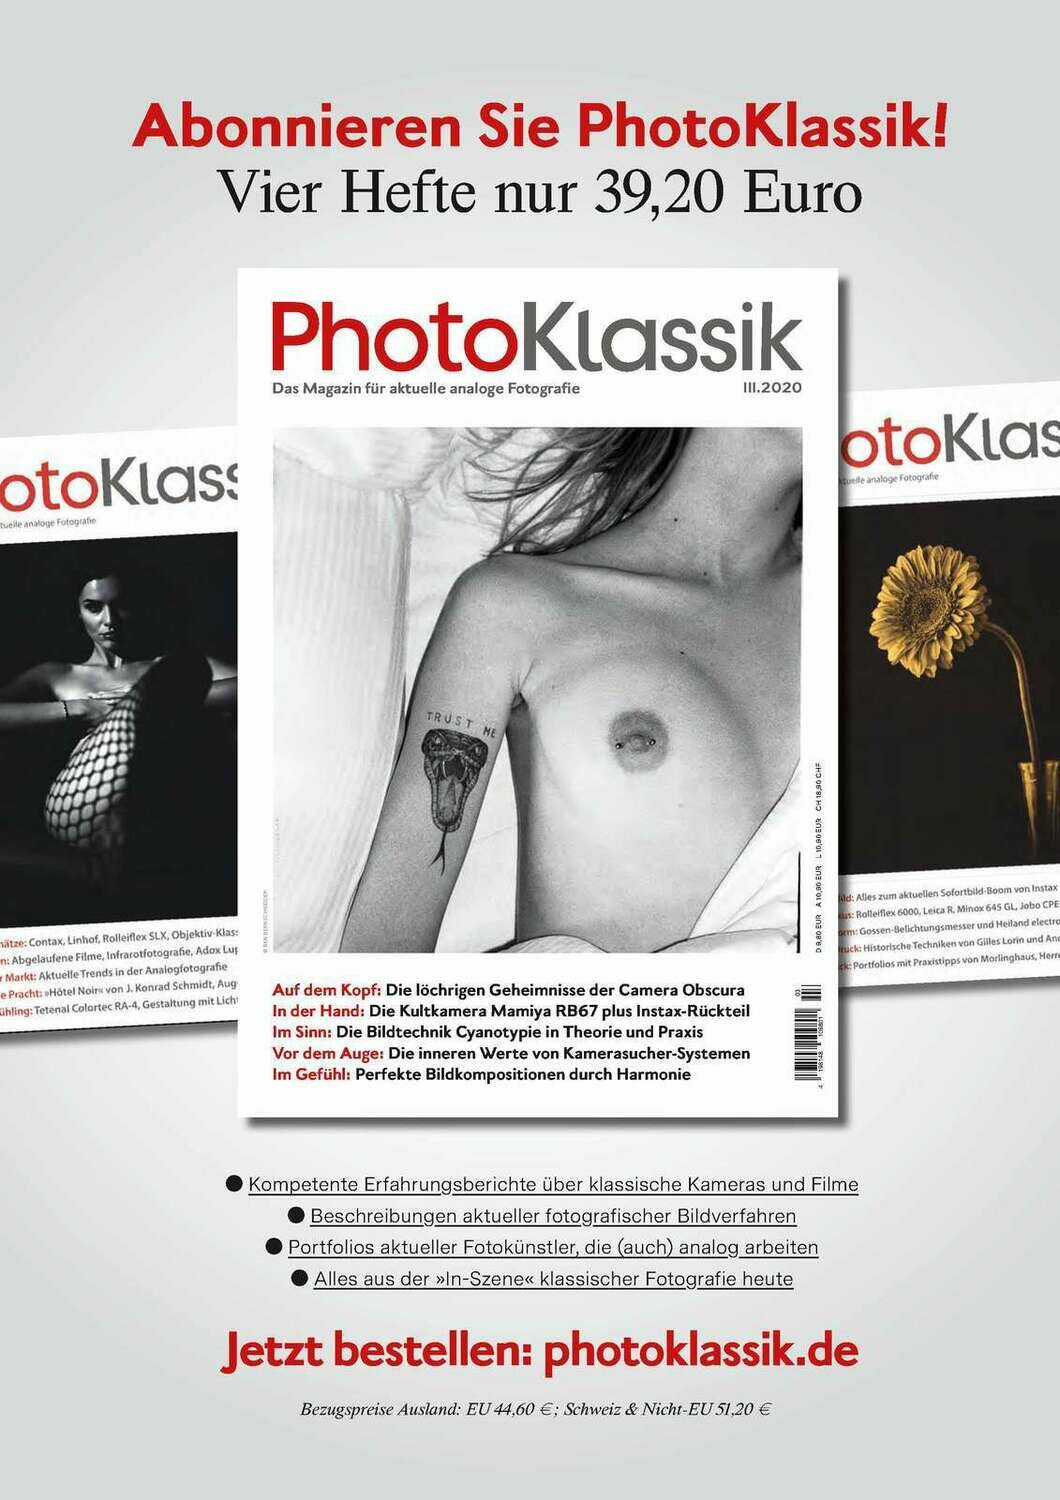 PhotoKlassik: das Magazin für aktuelle analoge Fotografie - Ausgabe III.2020